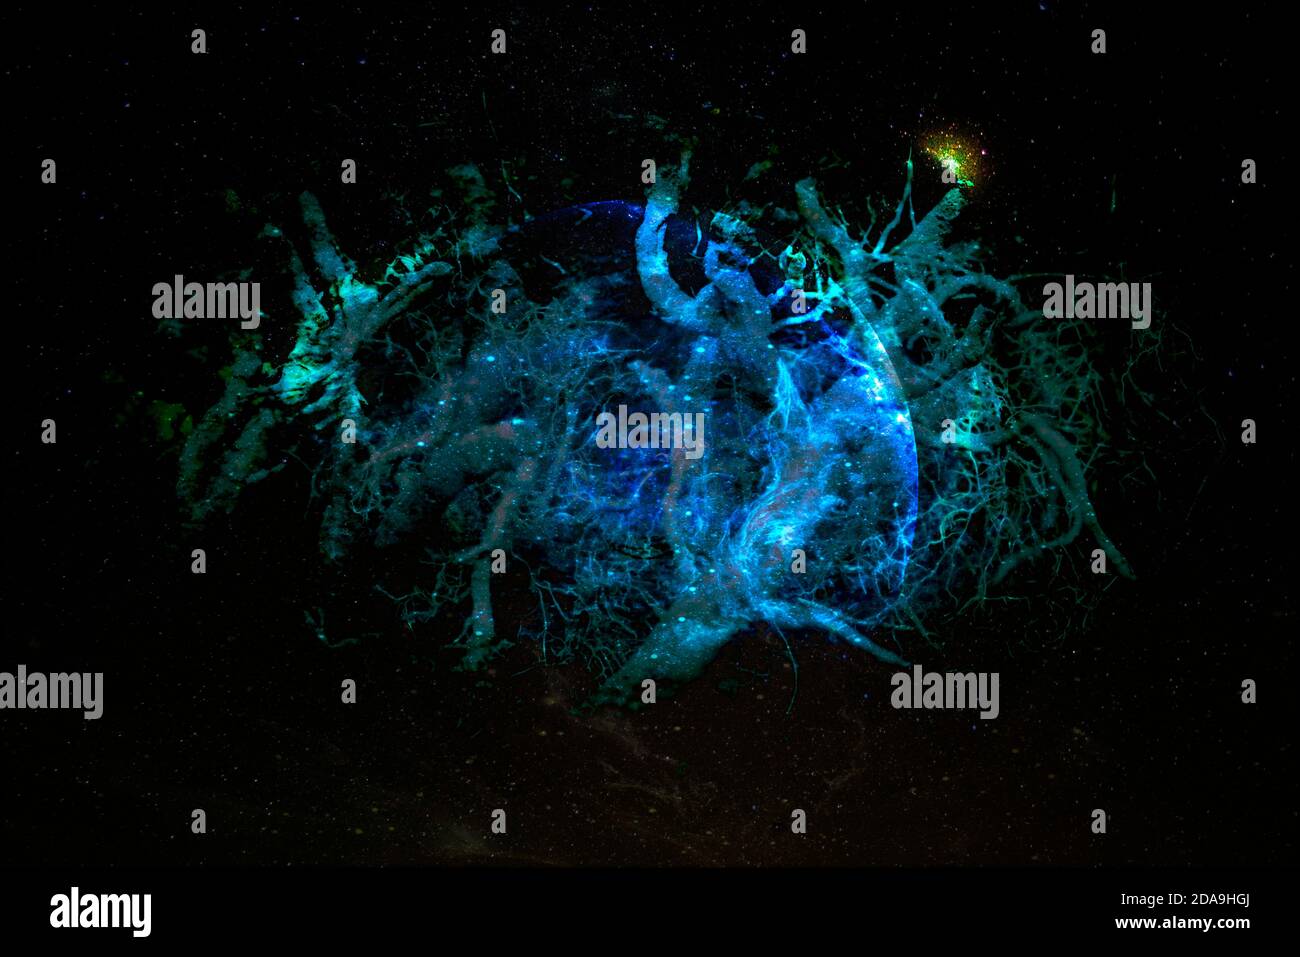 Les racines entrelacées forment la planète étrangère dans la galaxie. Éléments de cette image fournis par la NASA. Banque D'Images